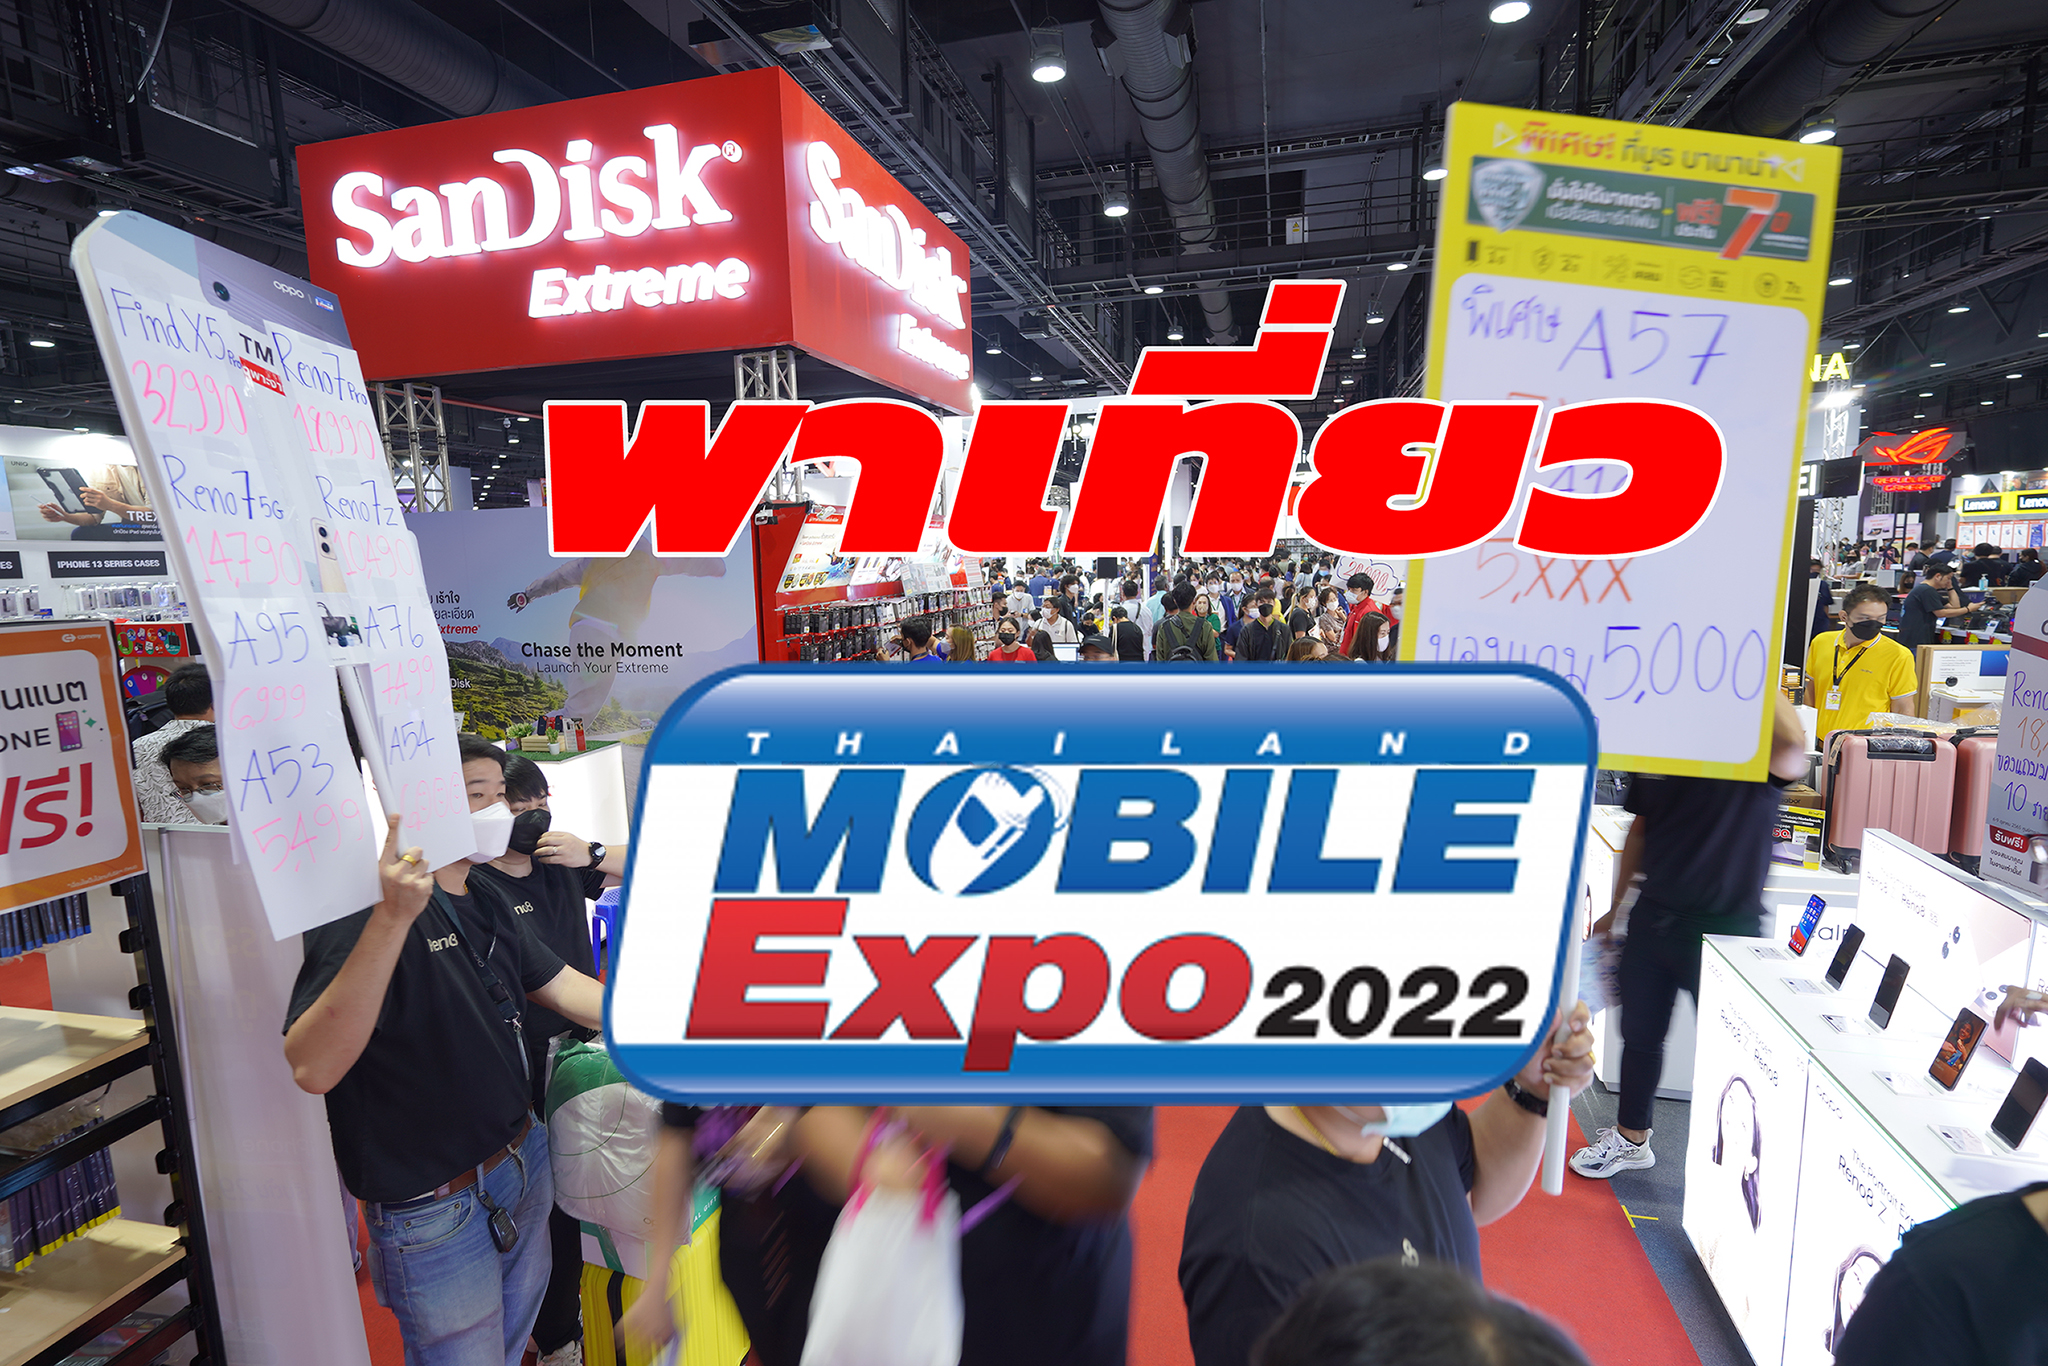 พาเที่ยว Thailand Mobile Expo 2022 งานมหกรรมมือถือที่กลับมาอย่างยิ่งใหญ่อีกครั้งหลังวิกฤติโควิค-19